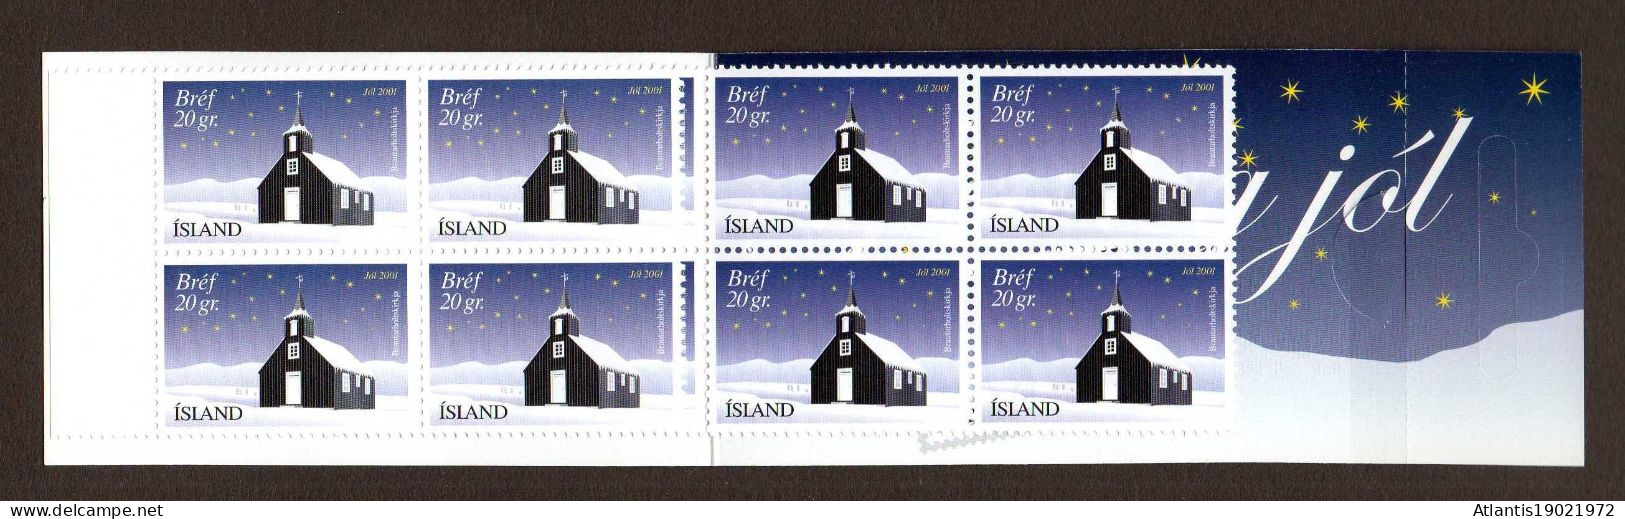 1 MARKENHEFTCHEN ISLAND WEIHNACHTEN JOL 2001 POSTFRISCH - Postzegelboekjes